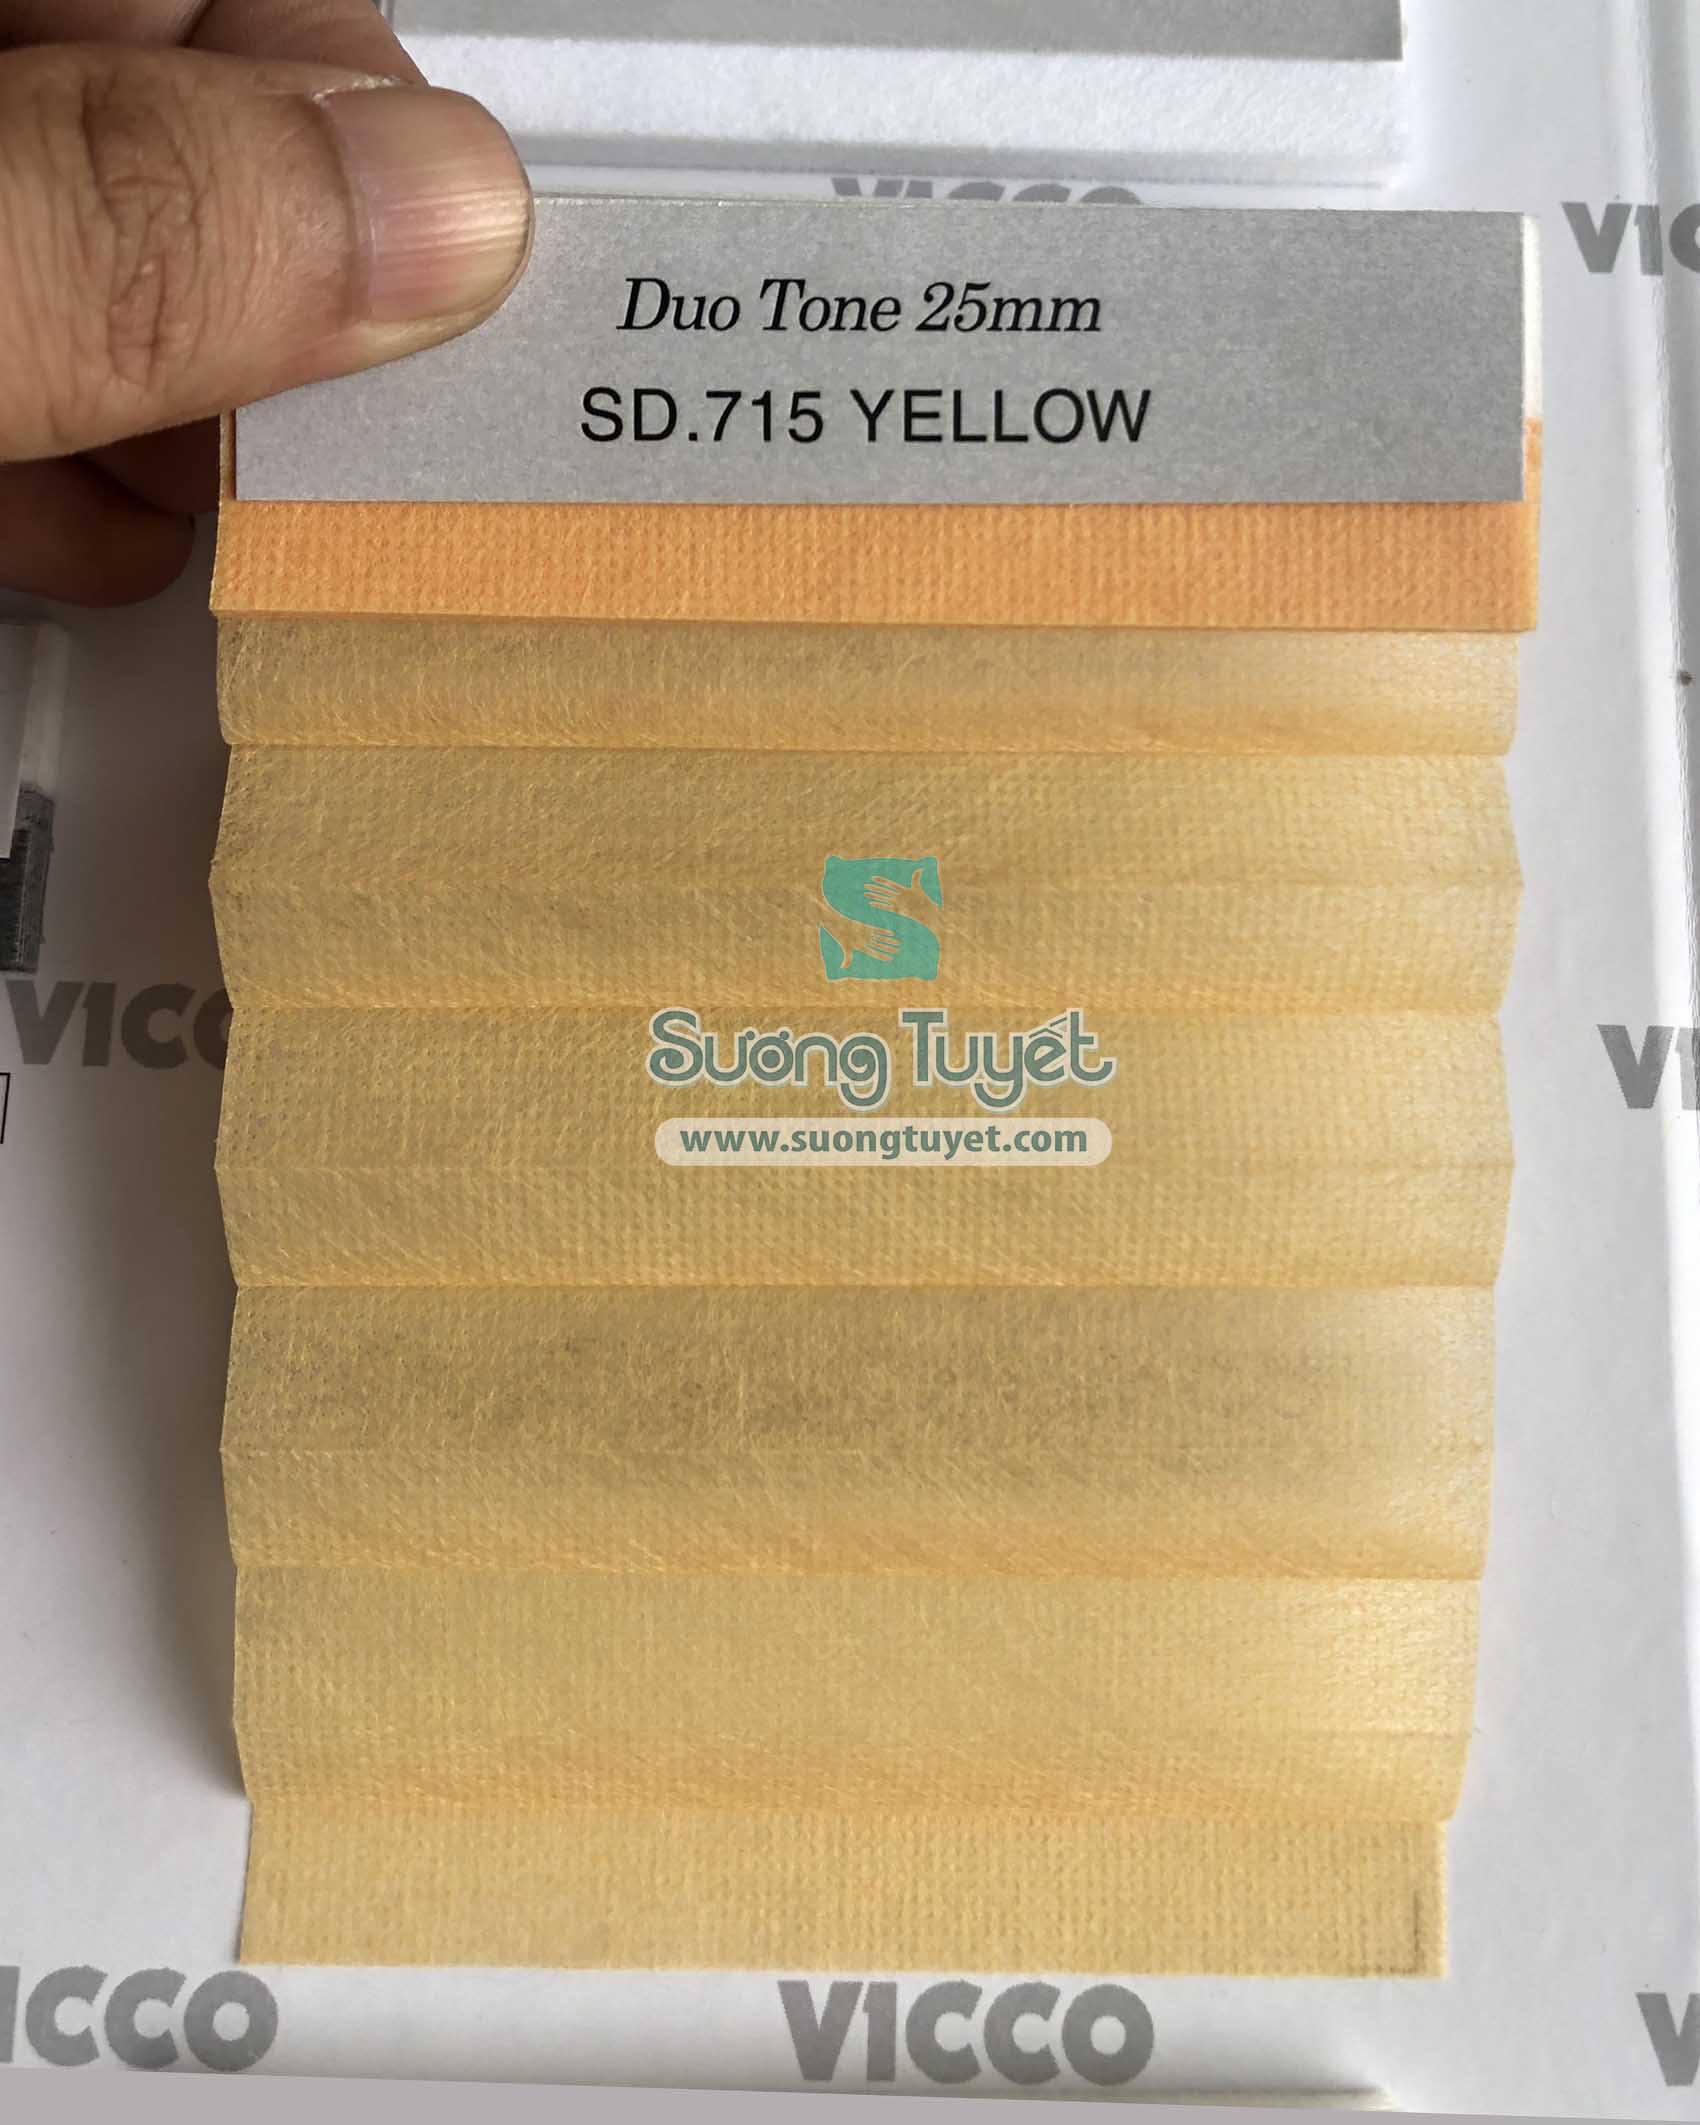 Mẫu rèm tổ ong Vicco Premium SD.715 Yellow.